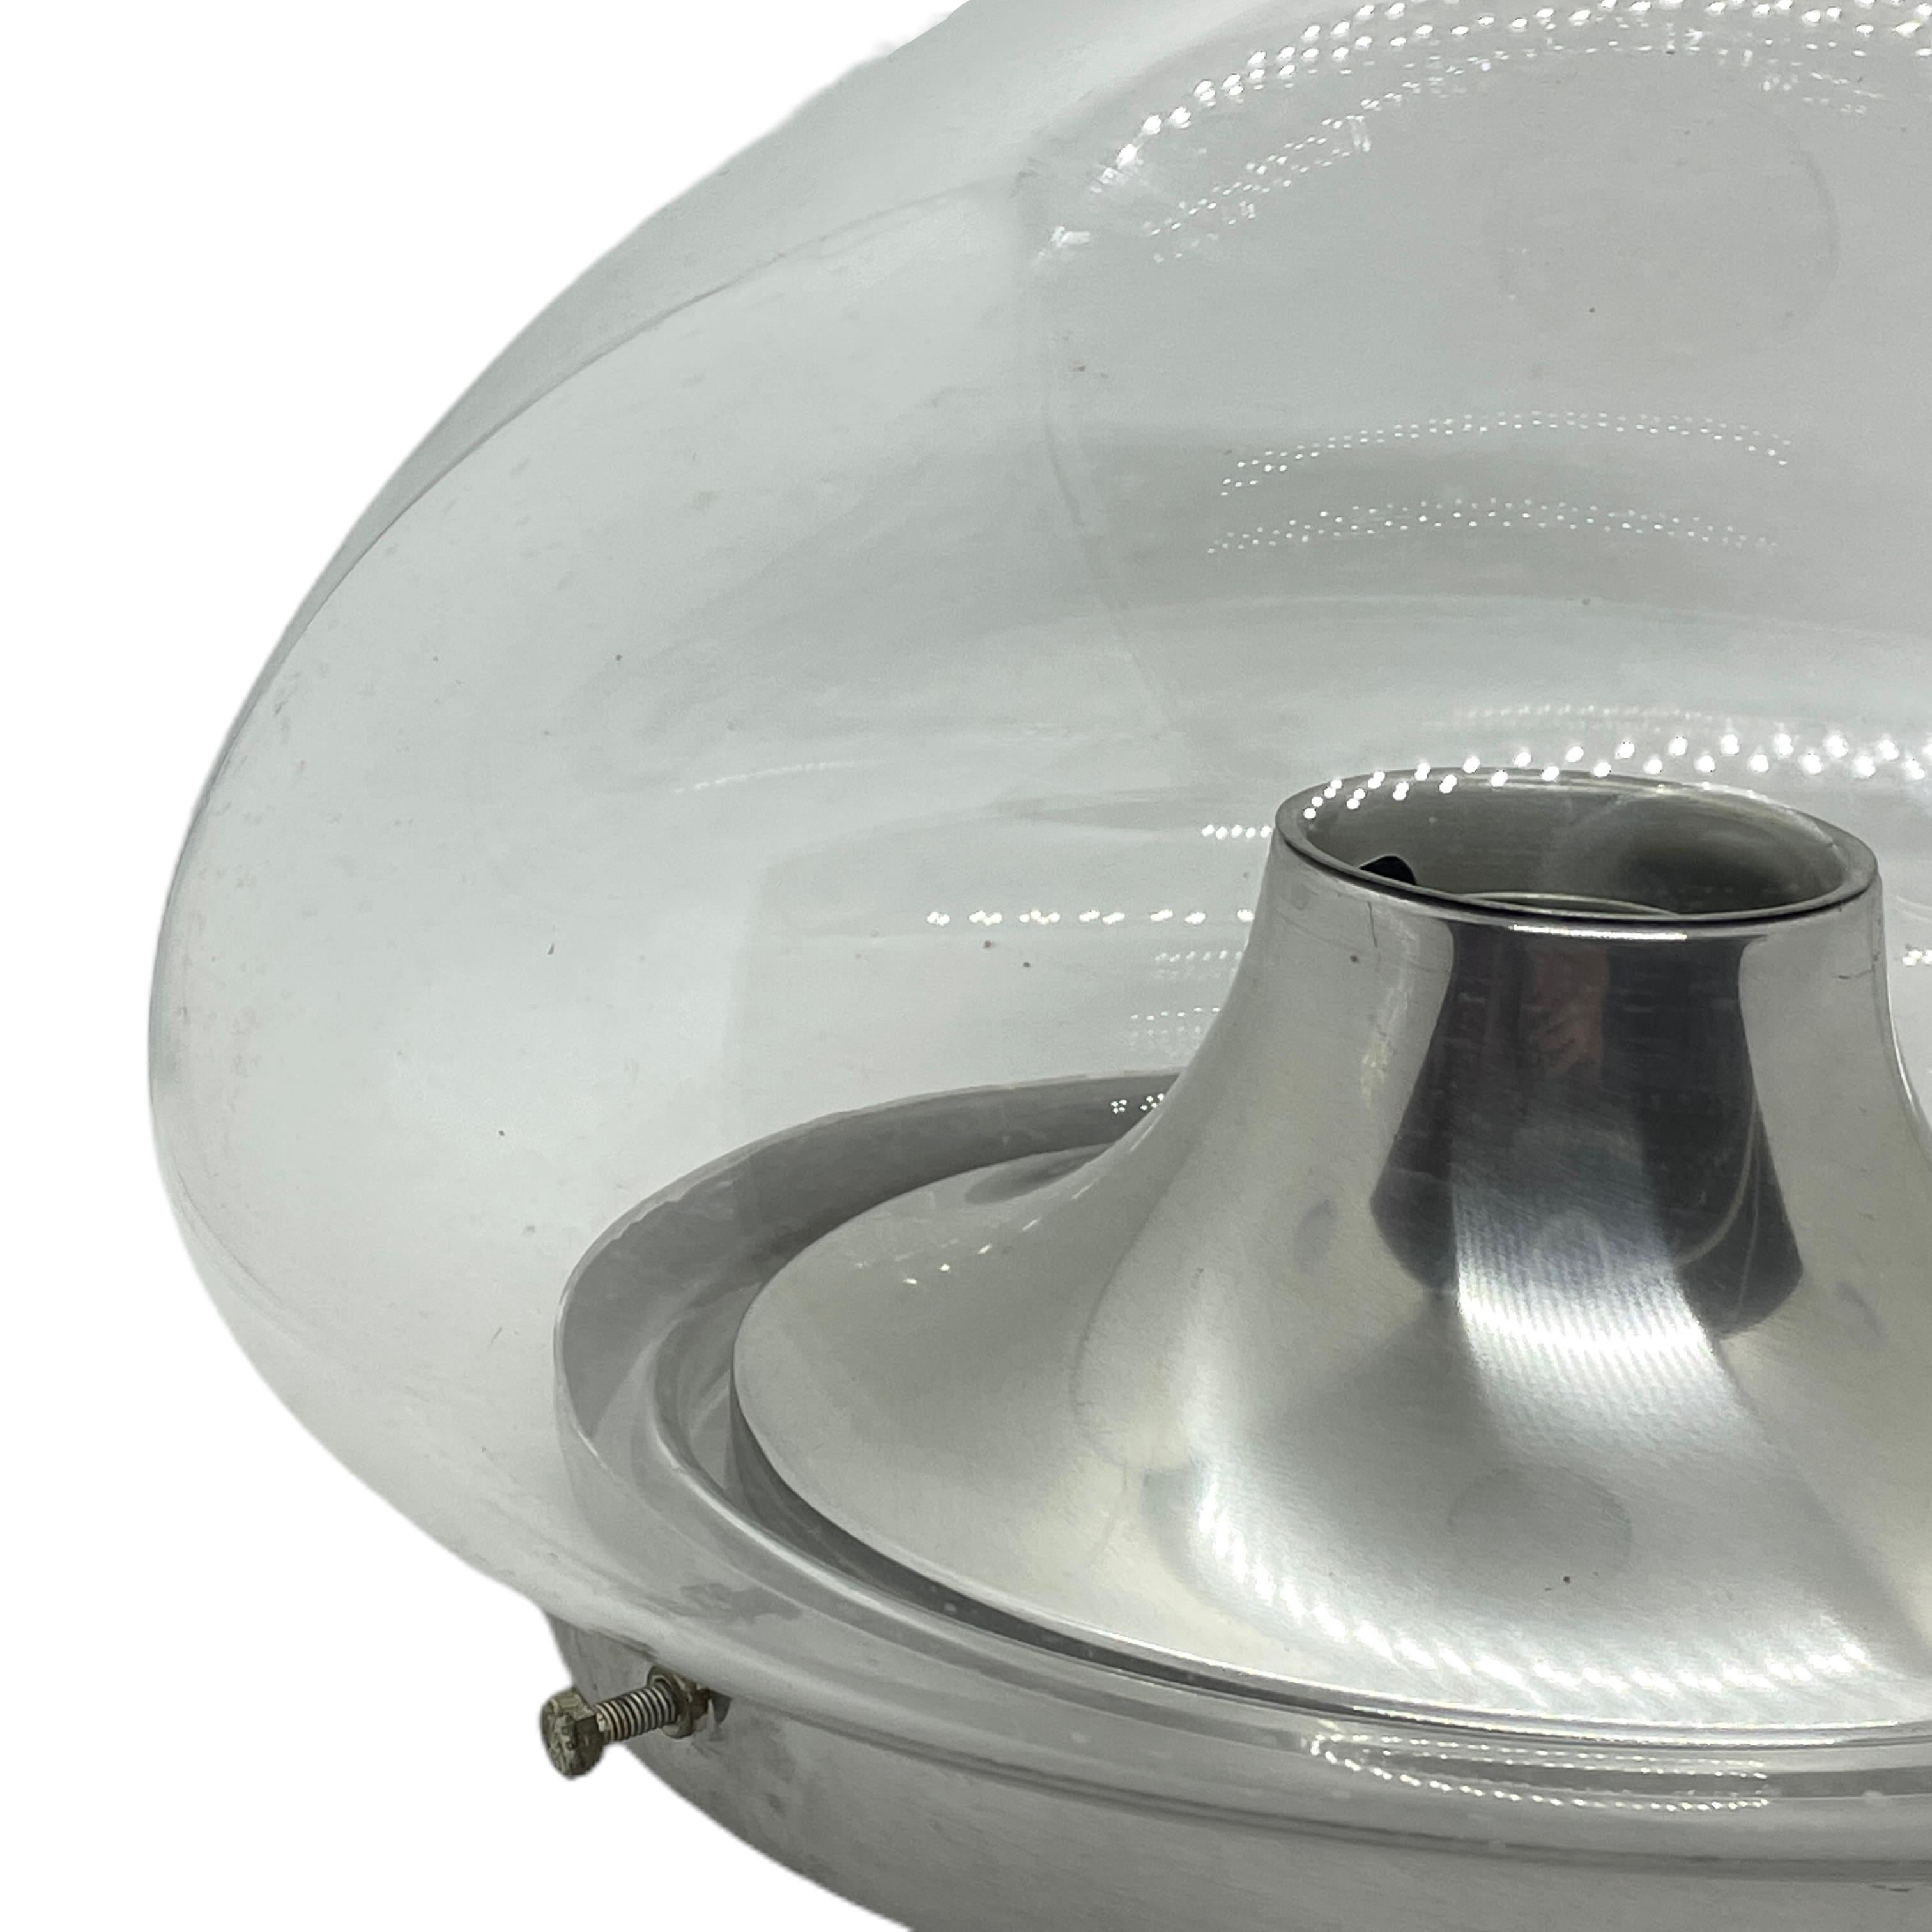 Eine schöne Unterputzleuchte des deutschen Herstellers Doria Leuchten. Das Glaselement wird von einer Aluminiumgrundplatte mit einer Lichtquelle getragen. Schönes klares Glas auf einer Metallhalterung. Die Leuchte benötigt eine europäische E27 / 110